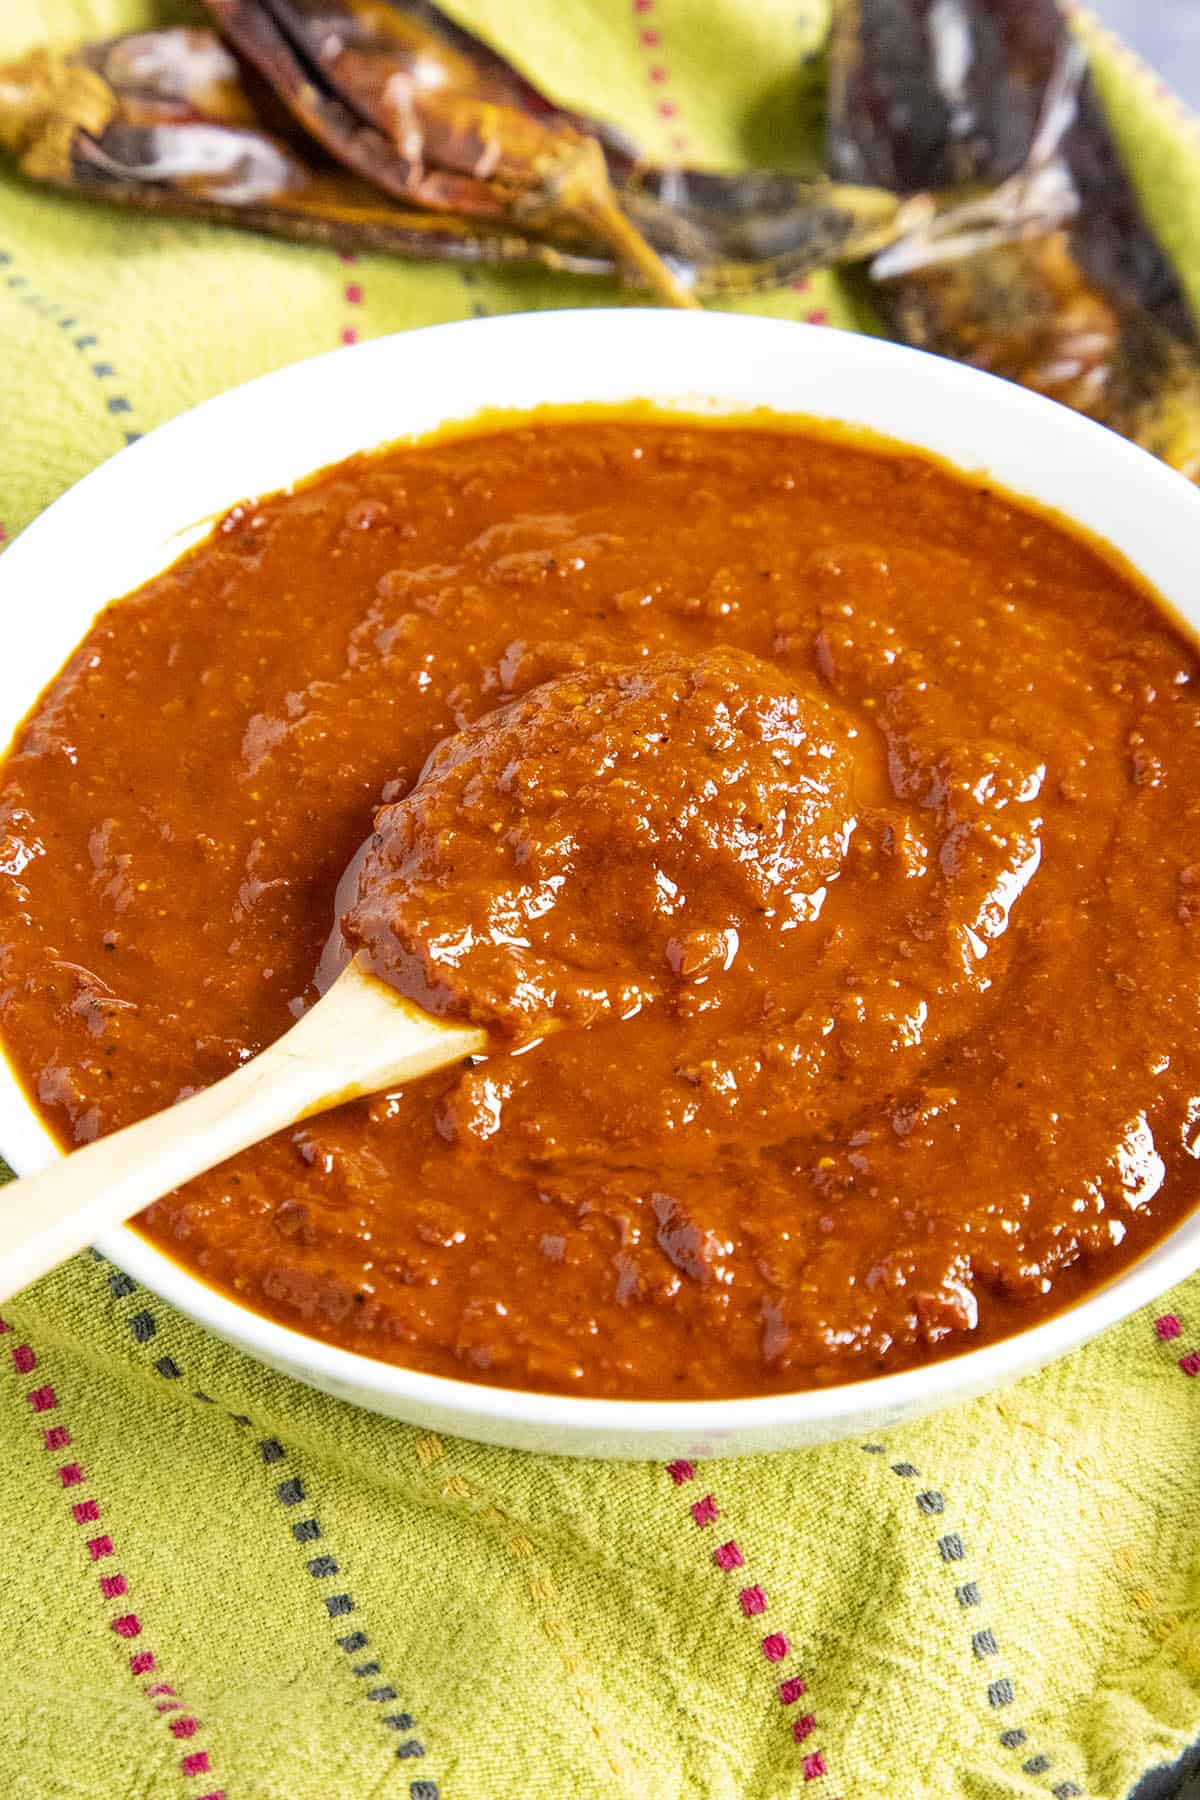 Homemade guajillo sauce on a spoon